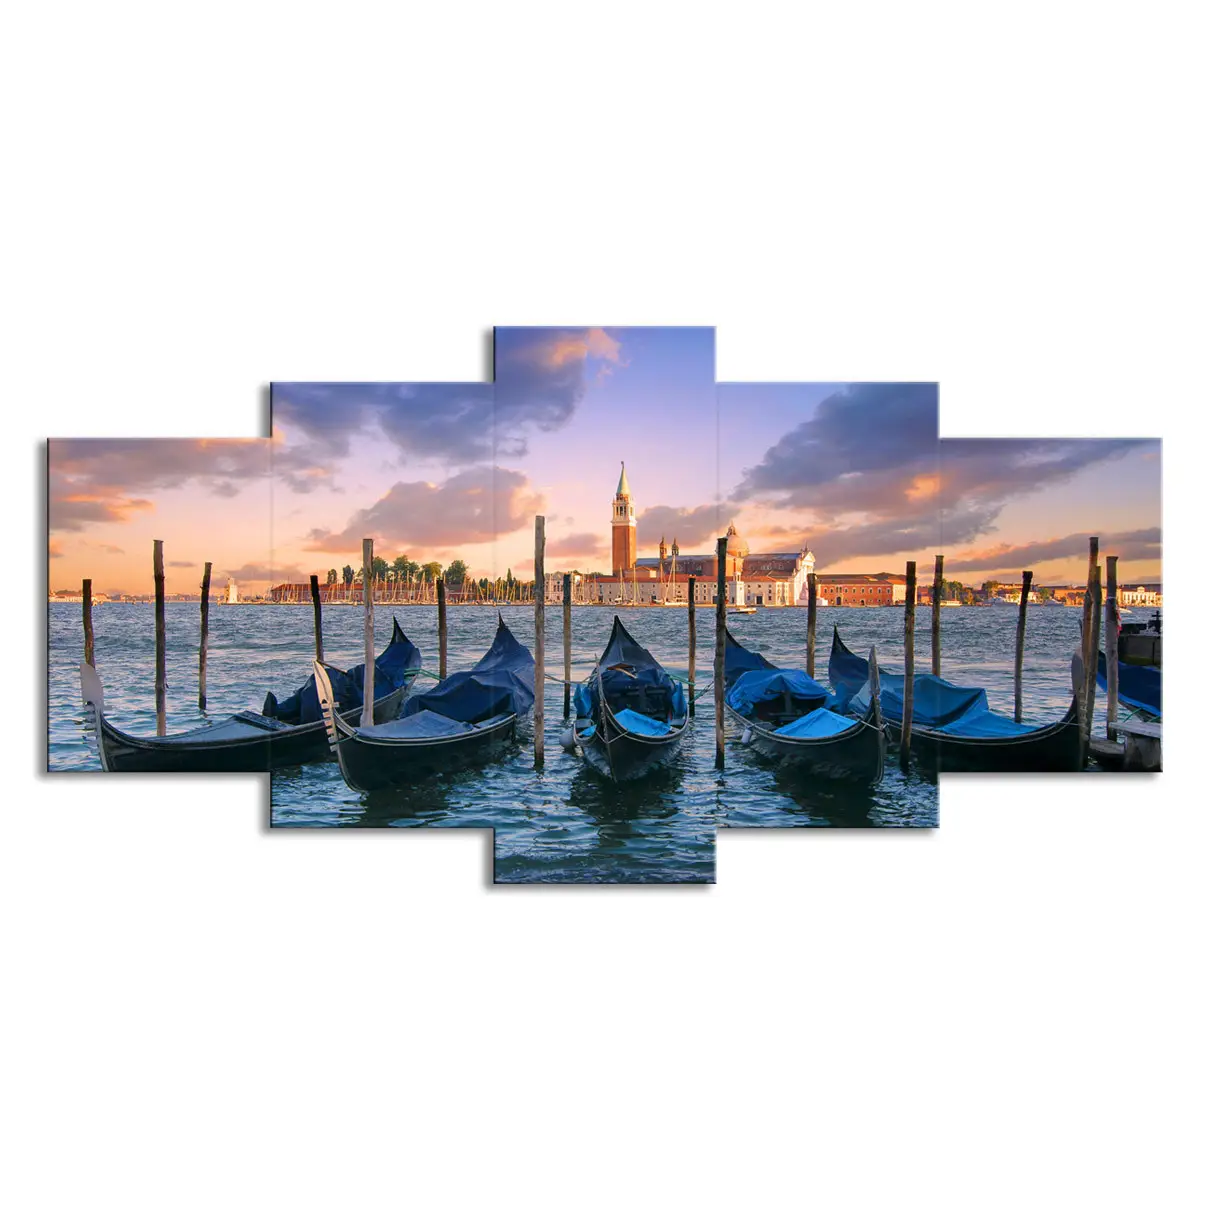 5 paneles azul barco Mar vista póster imagen playa ciudad puesta de sol paisaje moderno lienzo impresión arte para decoración de comedor